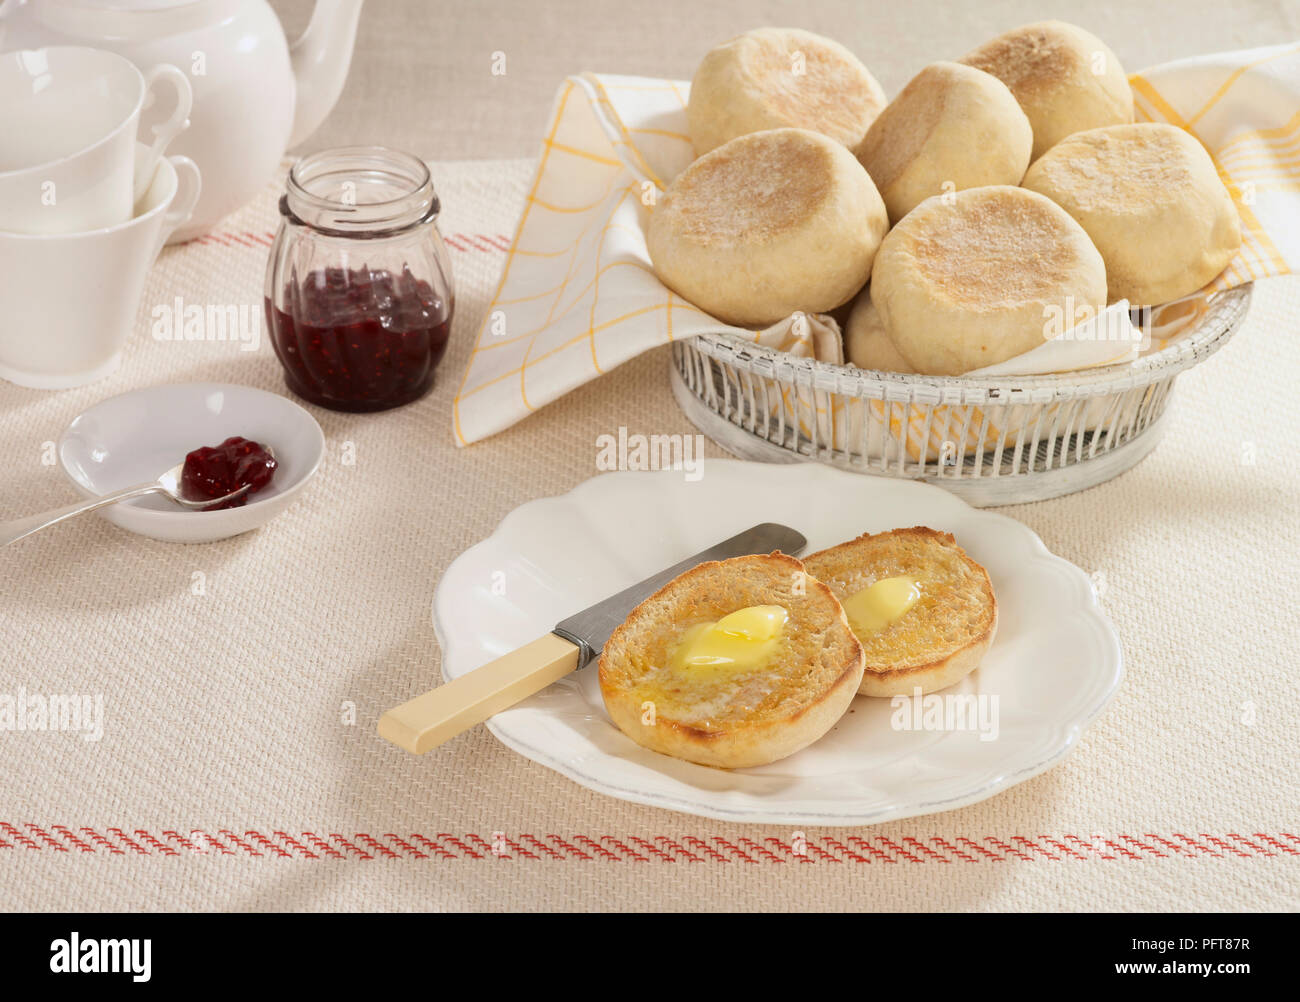 Muffin inglese servita su piastra in fusione con burro e marmellata e nel carrello Foto Stock